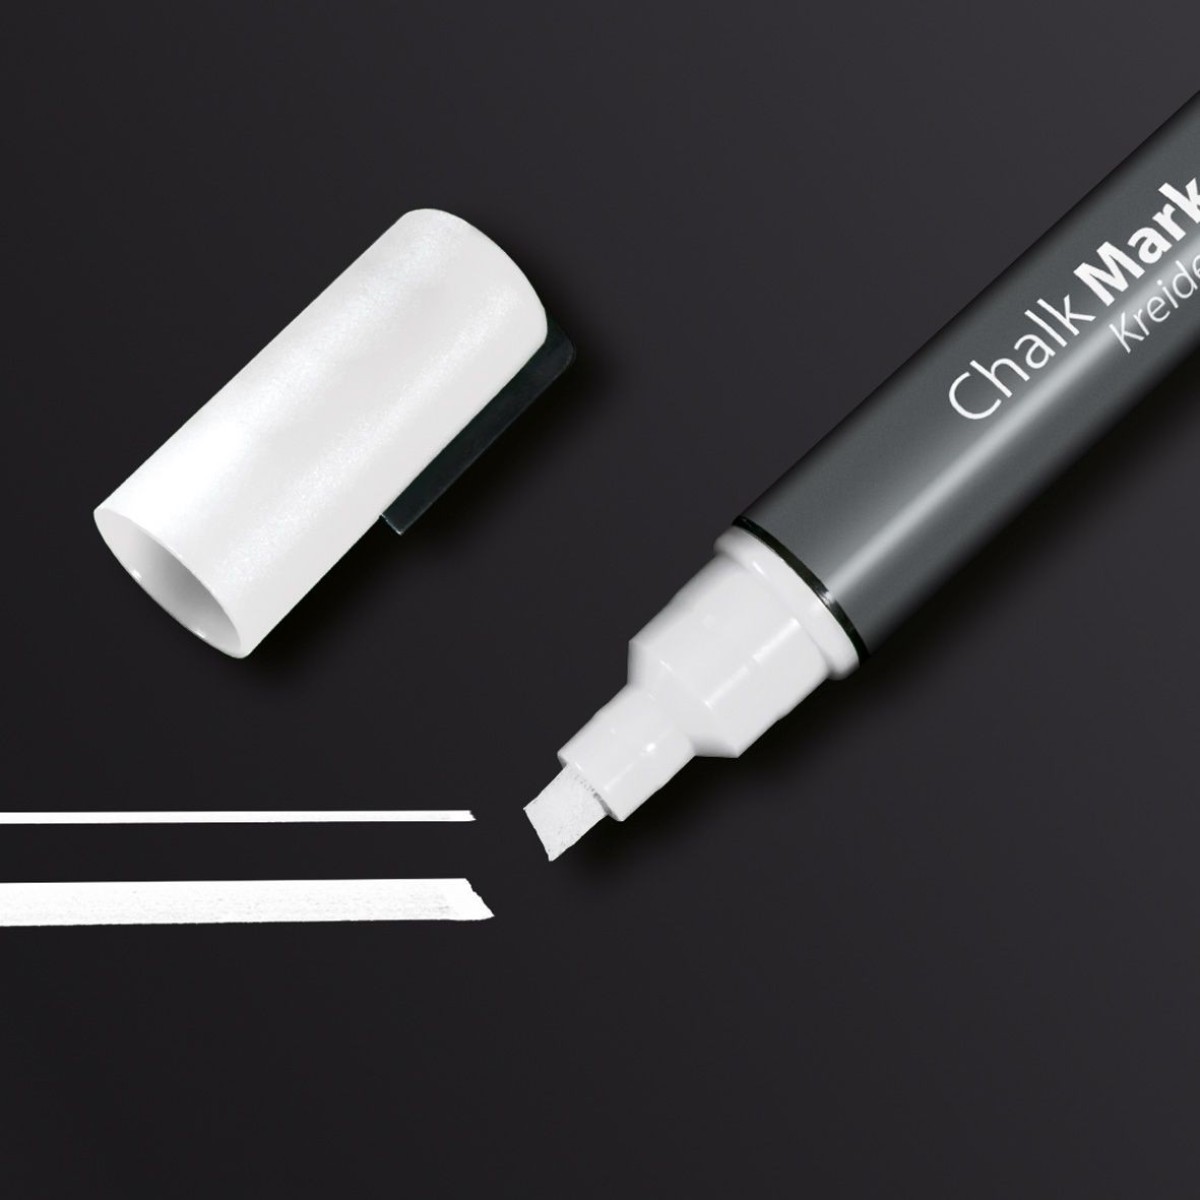 GL181 - Sigel - Chalk Marker 50, chisel tip 1-5 mm - White